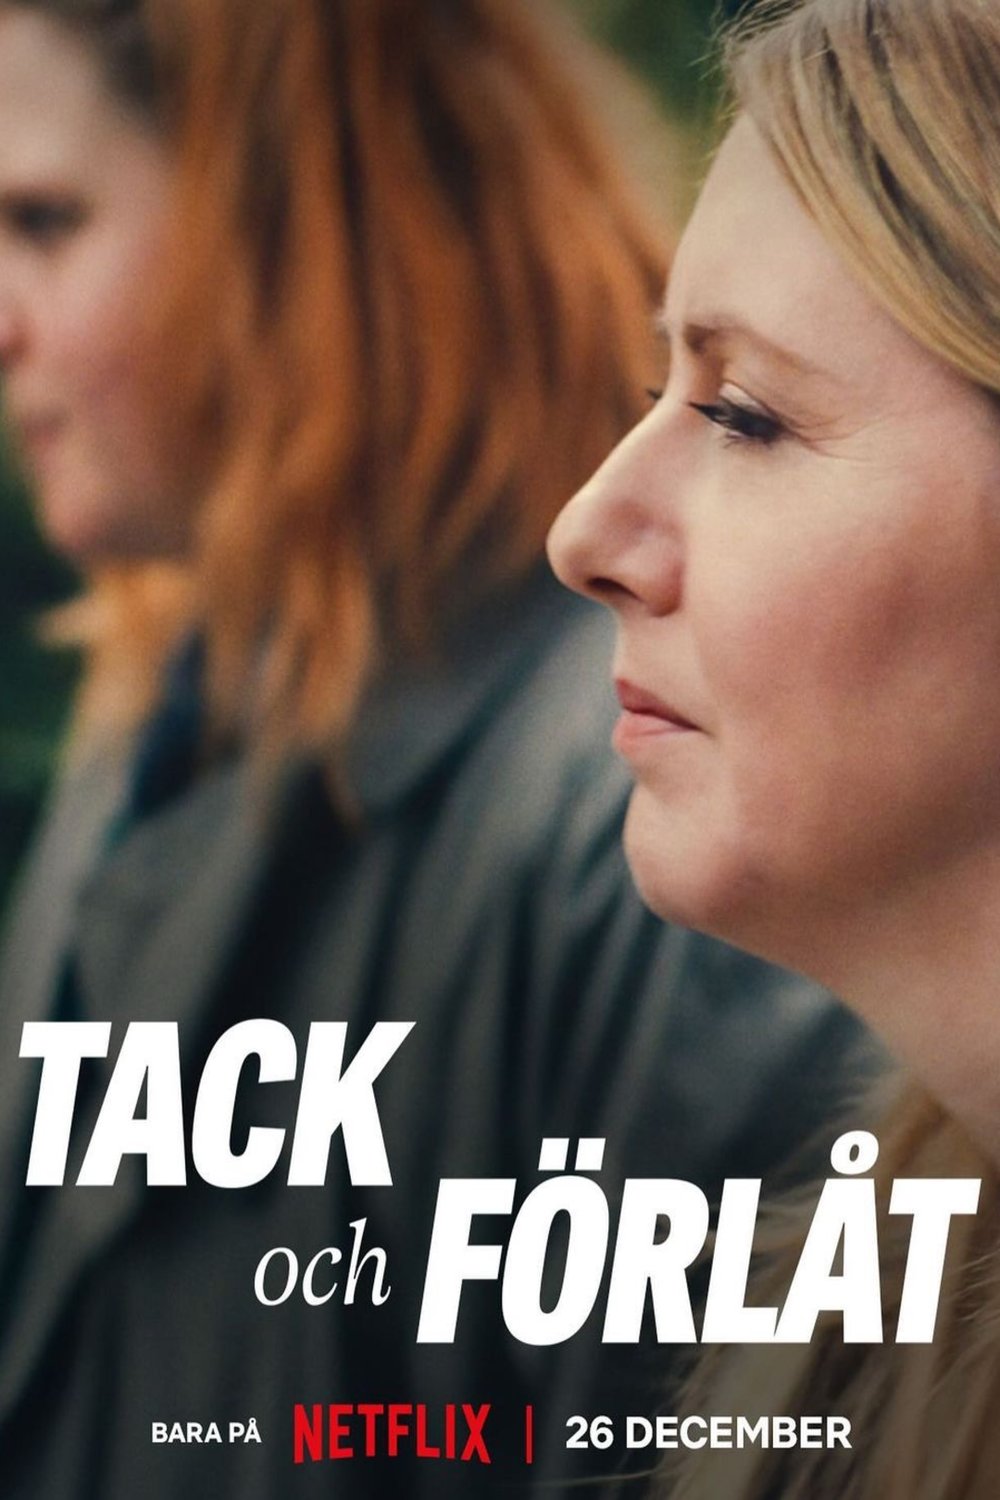 Swedish poster of the movie Tack och förlåt